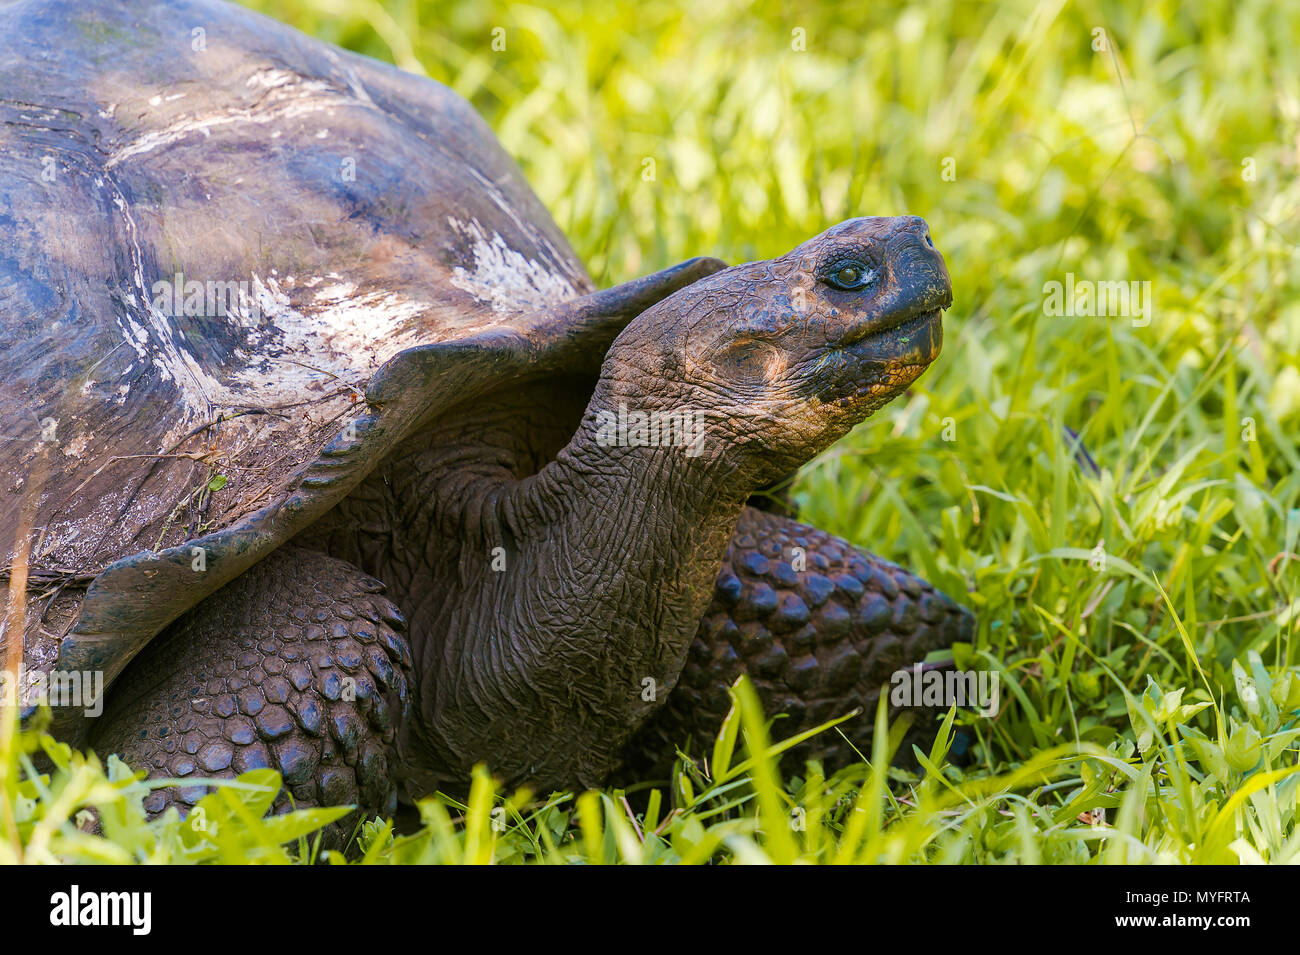 Riesige Schildkröte im Hochland der Insel Santa Cruz. Galapagos Schildkröte ist das größte lebende Arten der Schildkröte, erreichen ein Gewicht von über 400 kg Stockfoto